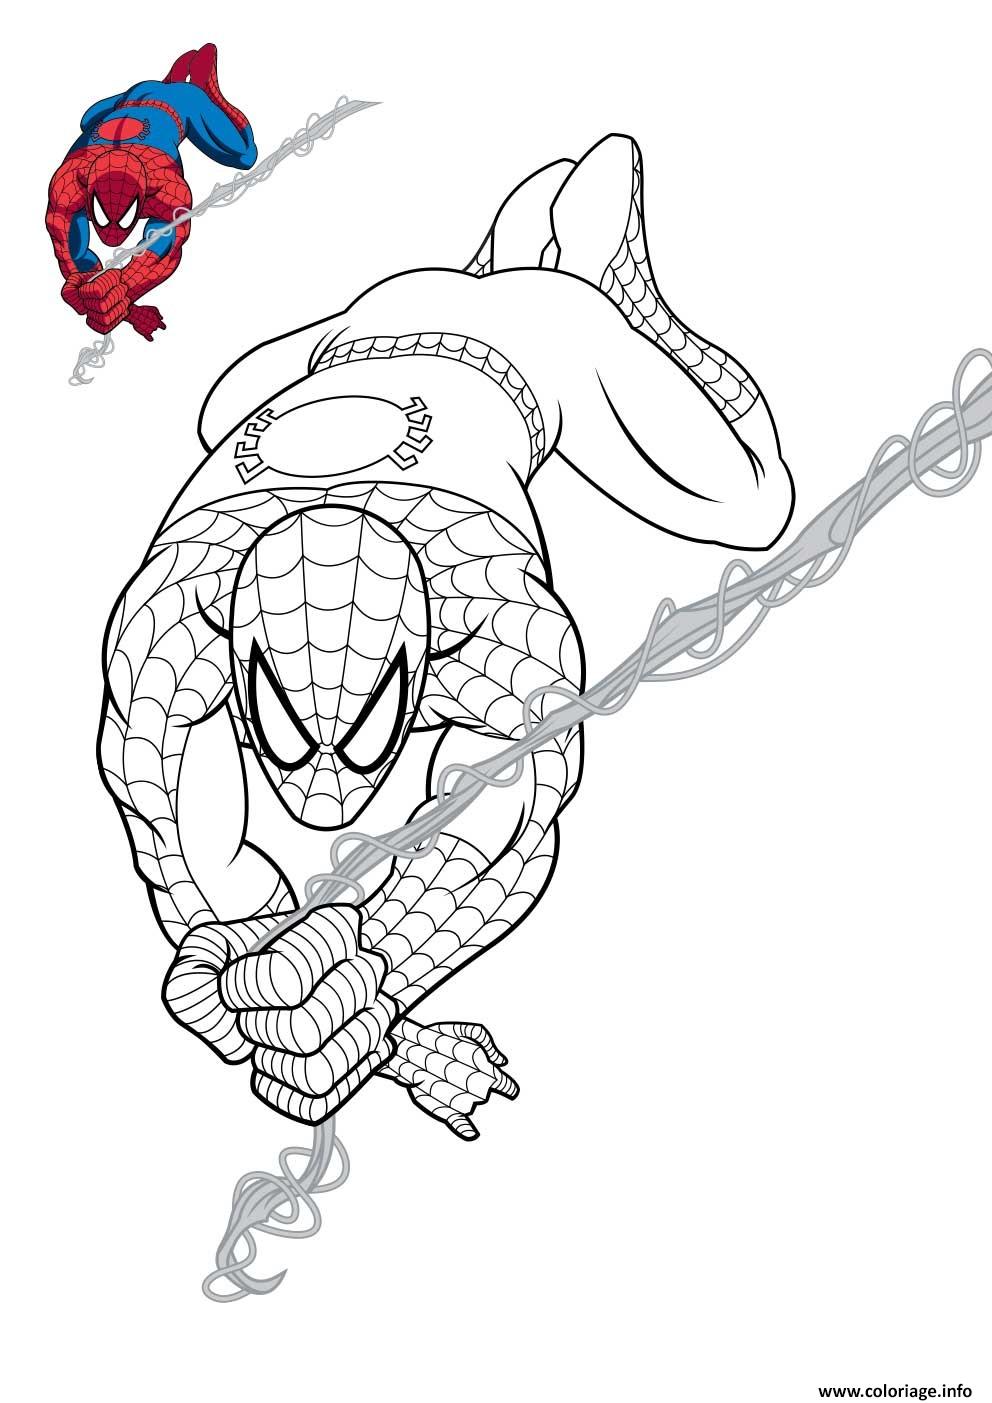 Coloriage Spiderman En Plein Action Jecolorie Com